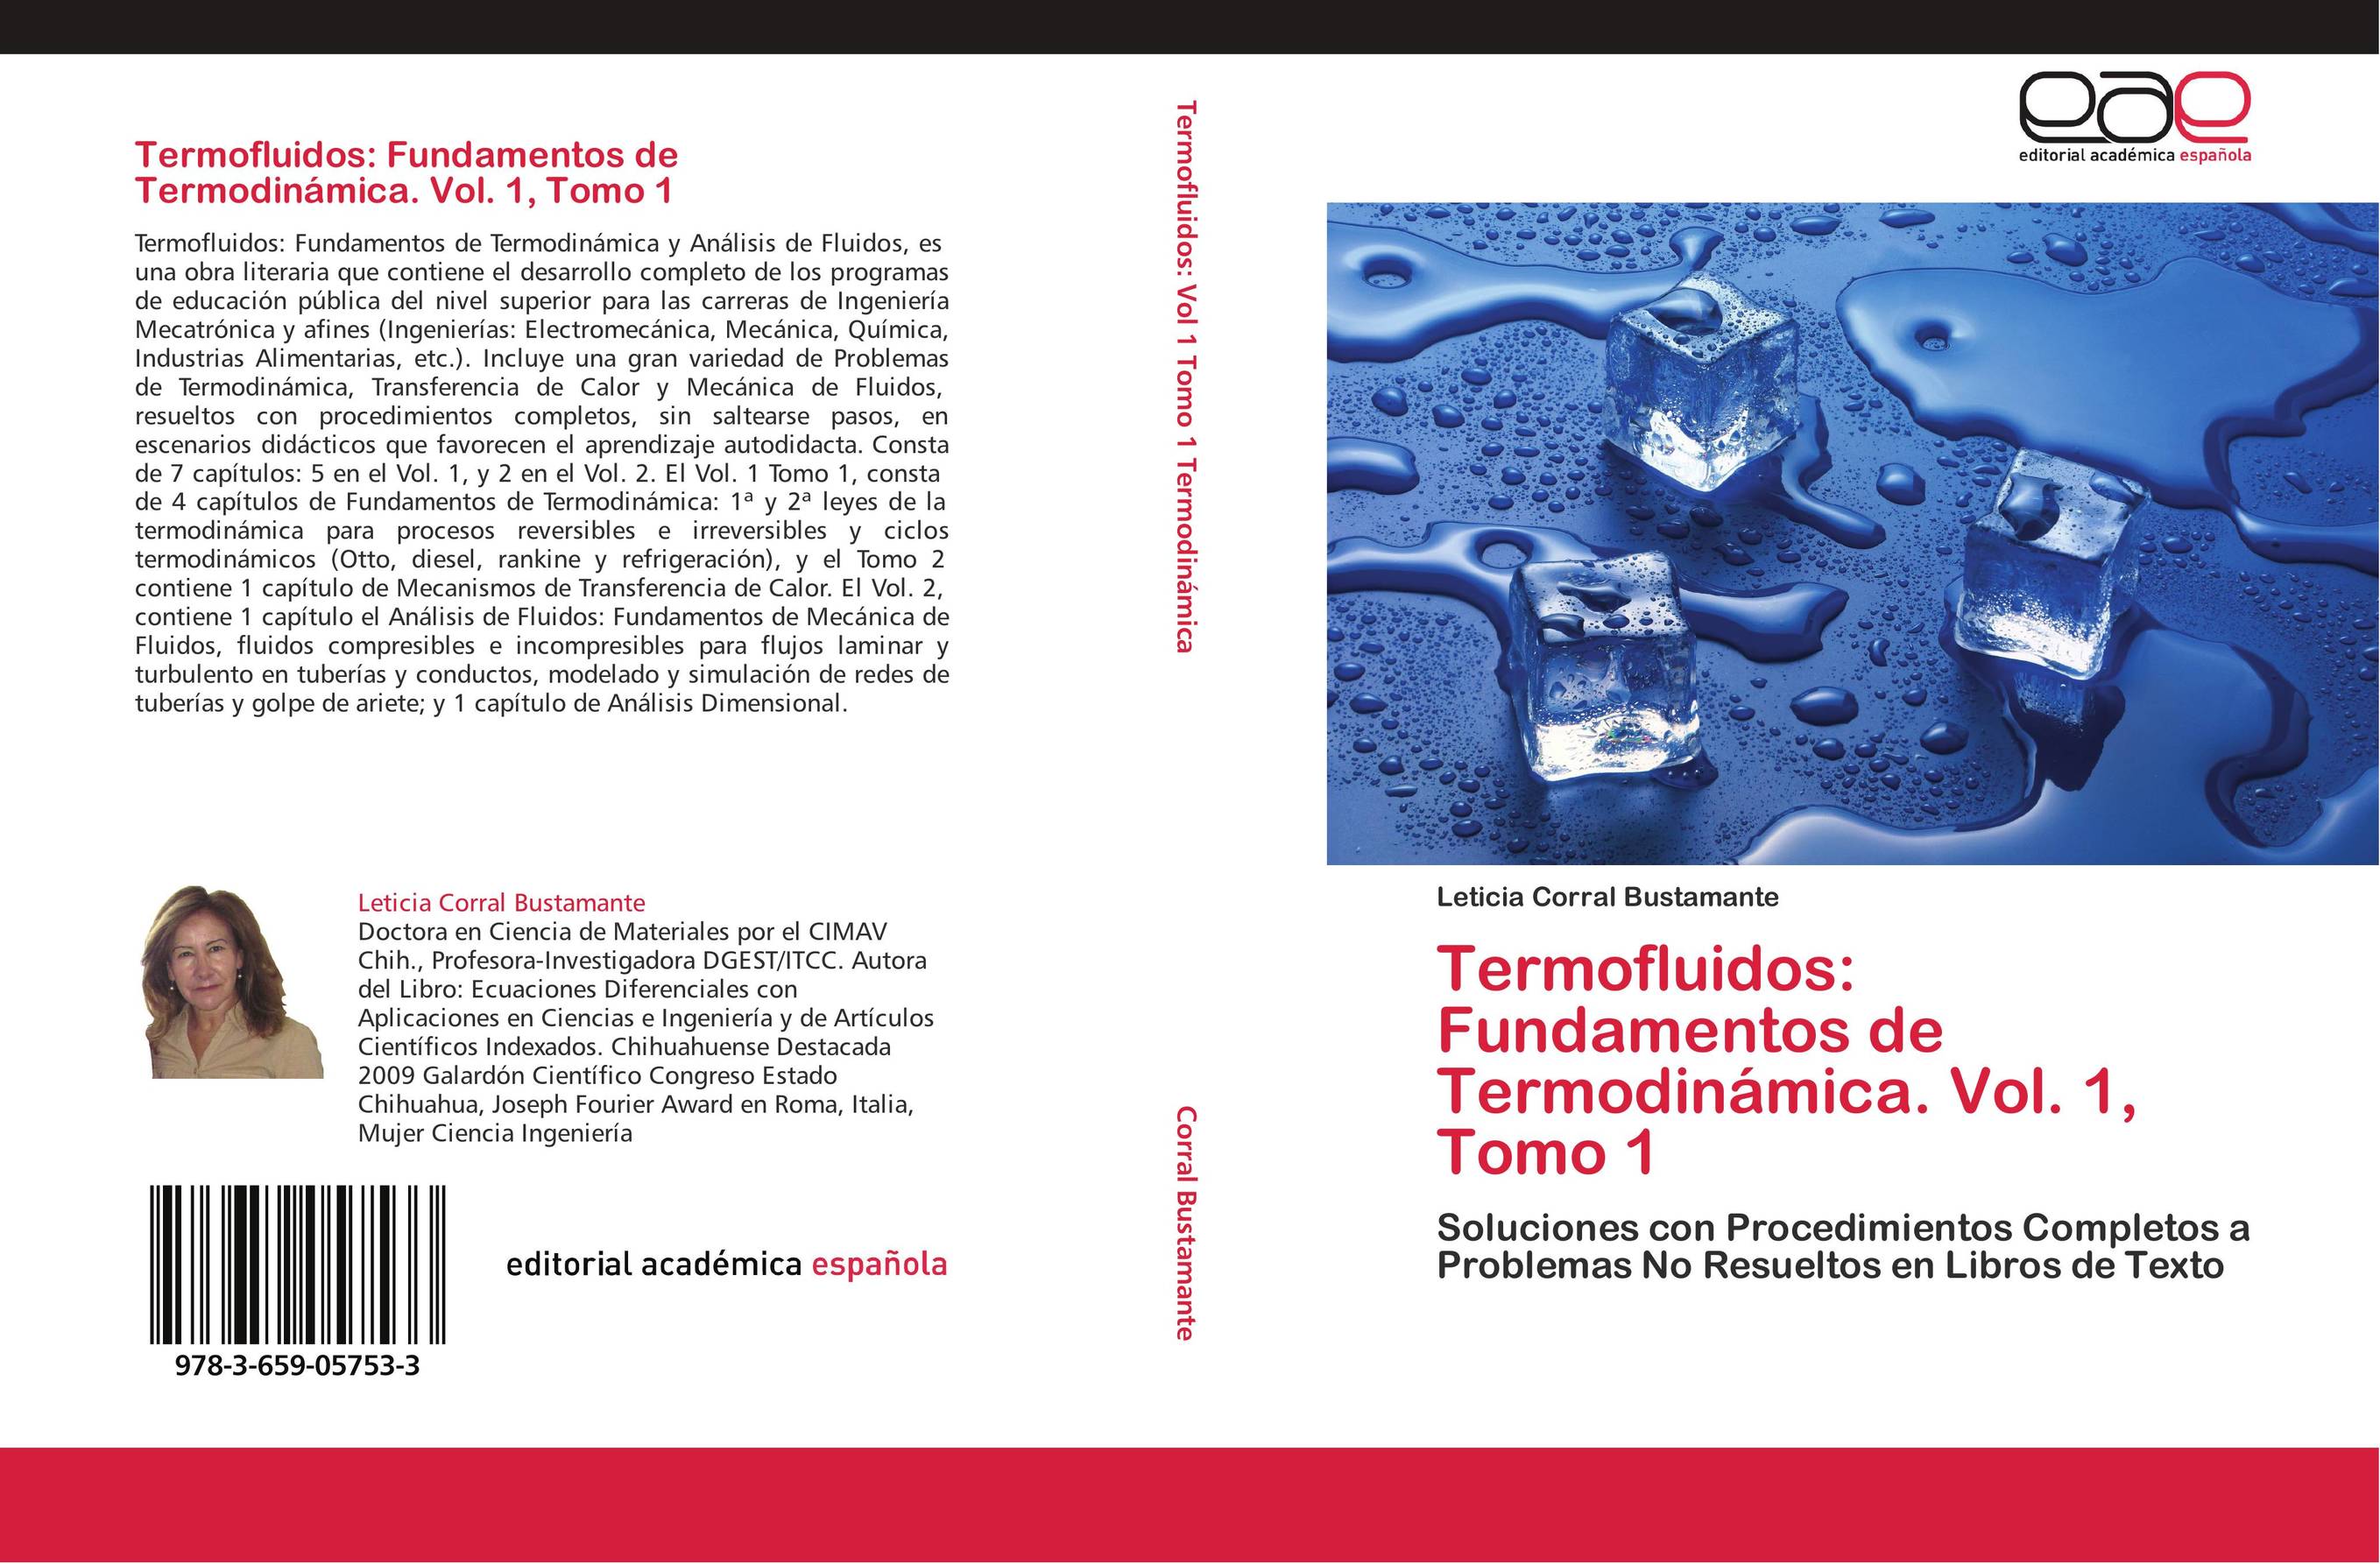 Termofluidos: Fundamentos de Termodinámica.  Vol. 1, Tomo 1